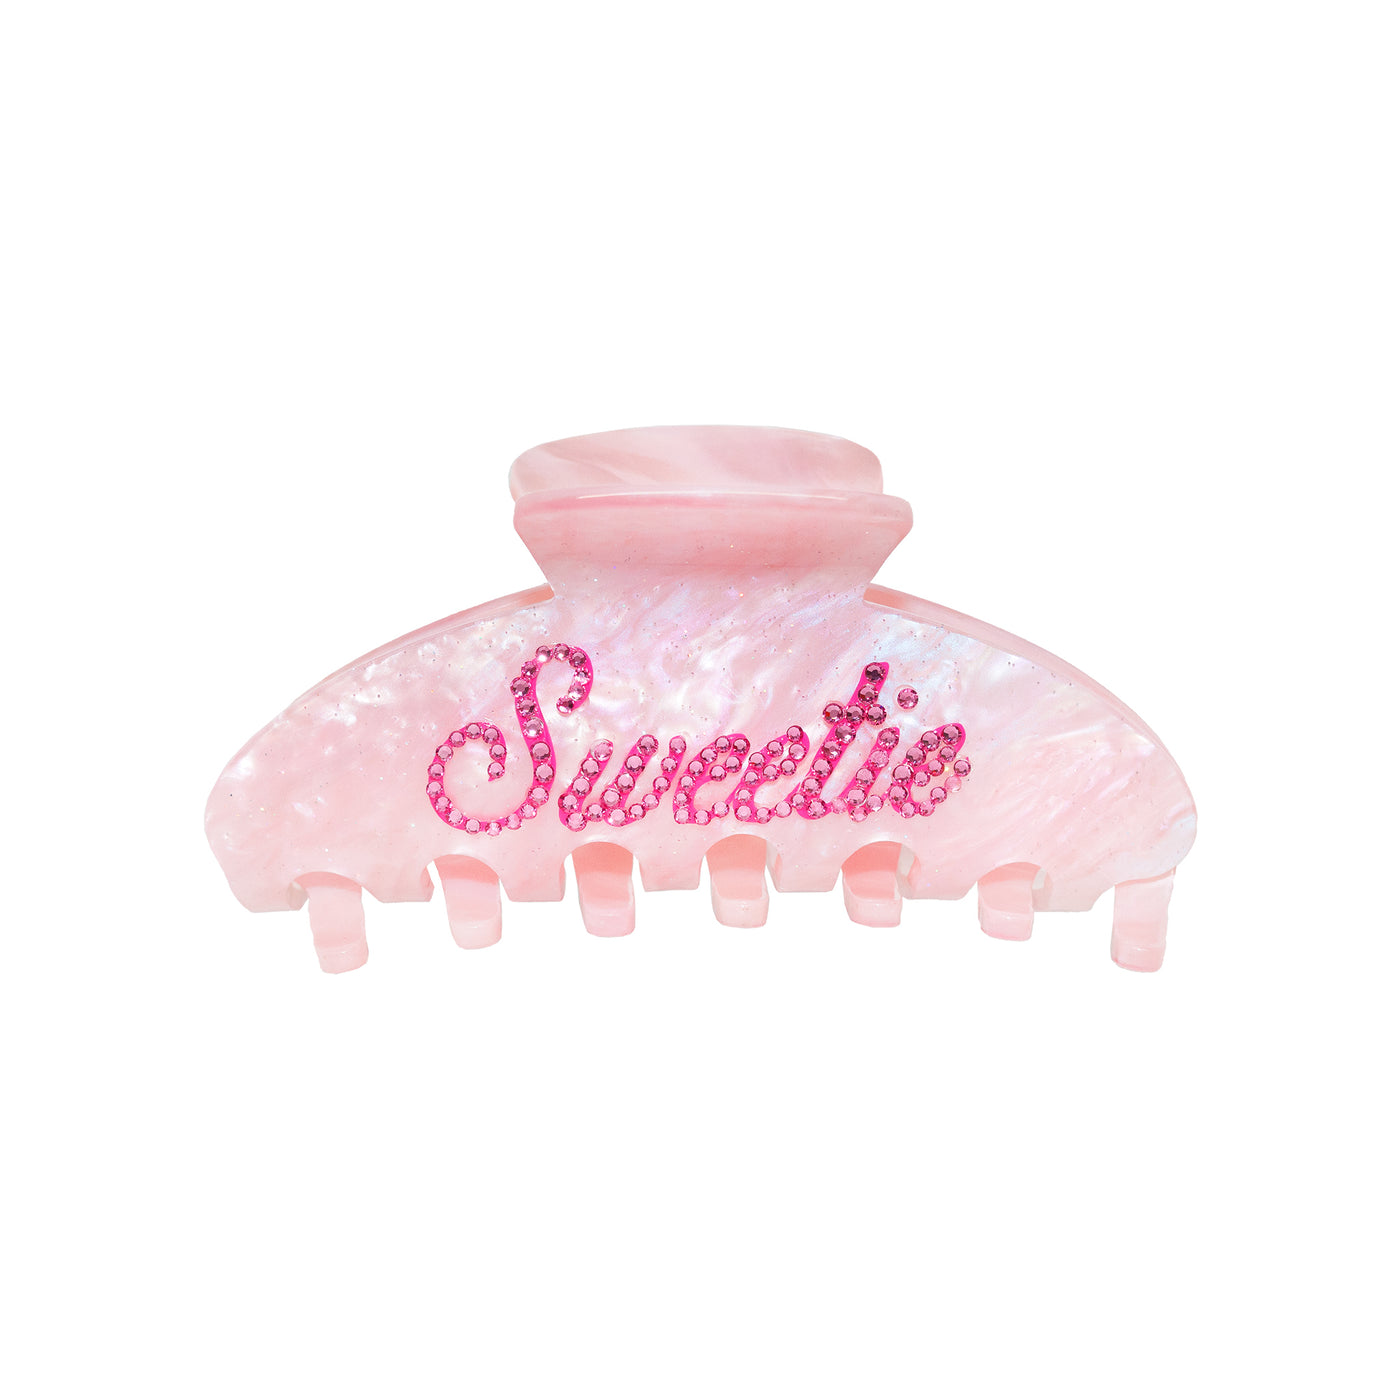 Big Effing Clip in Pink Sugar "Sweetie"